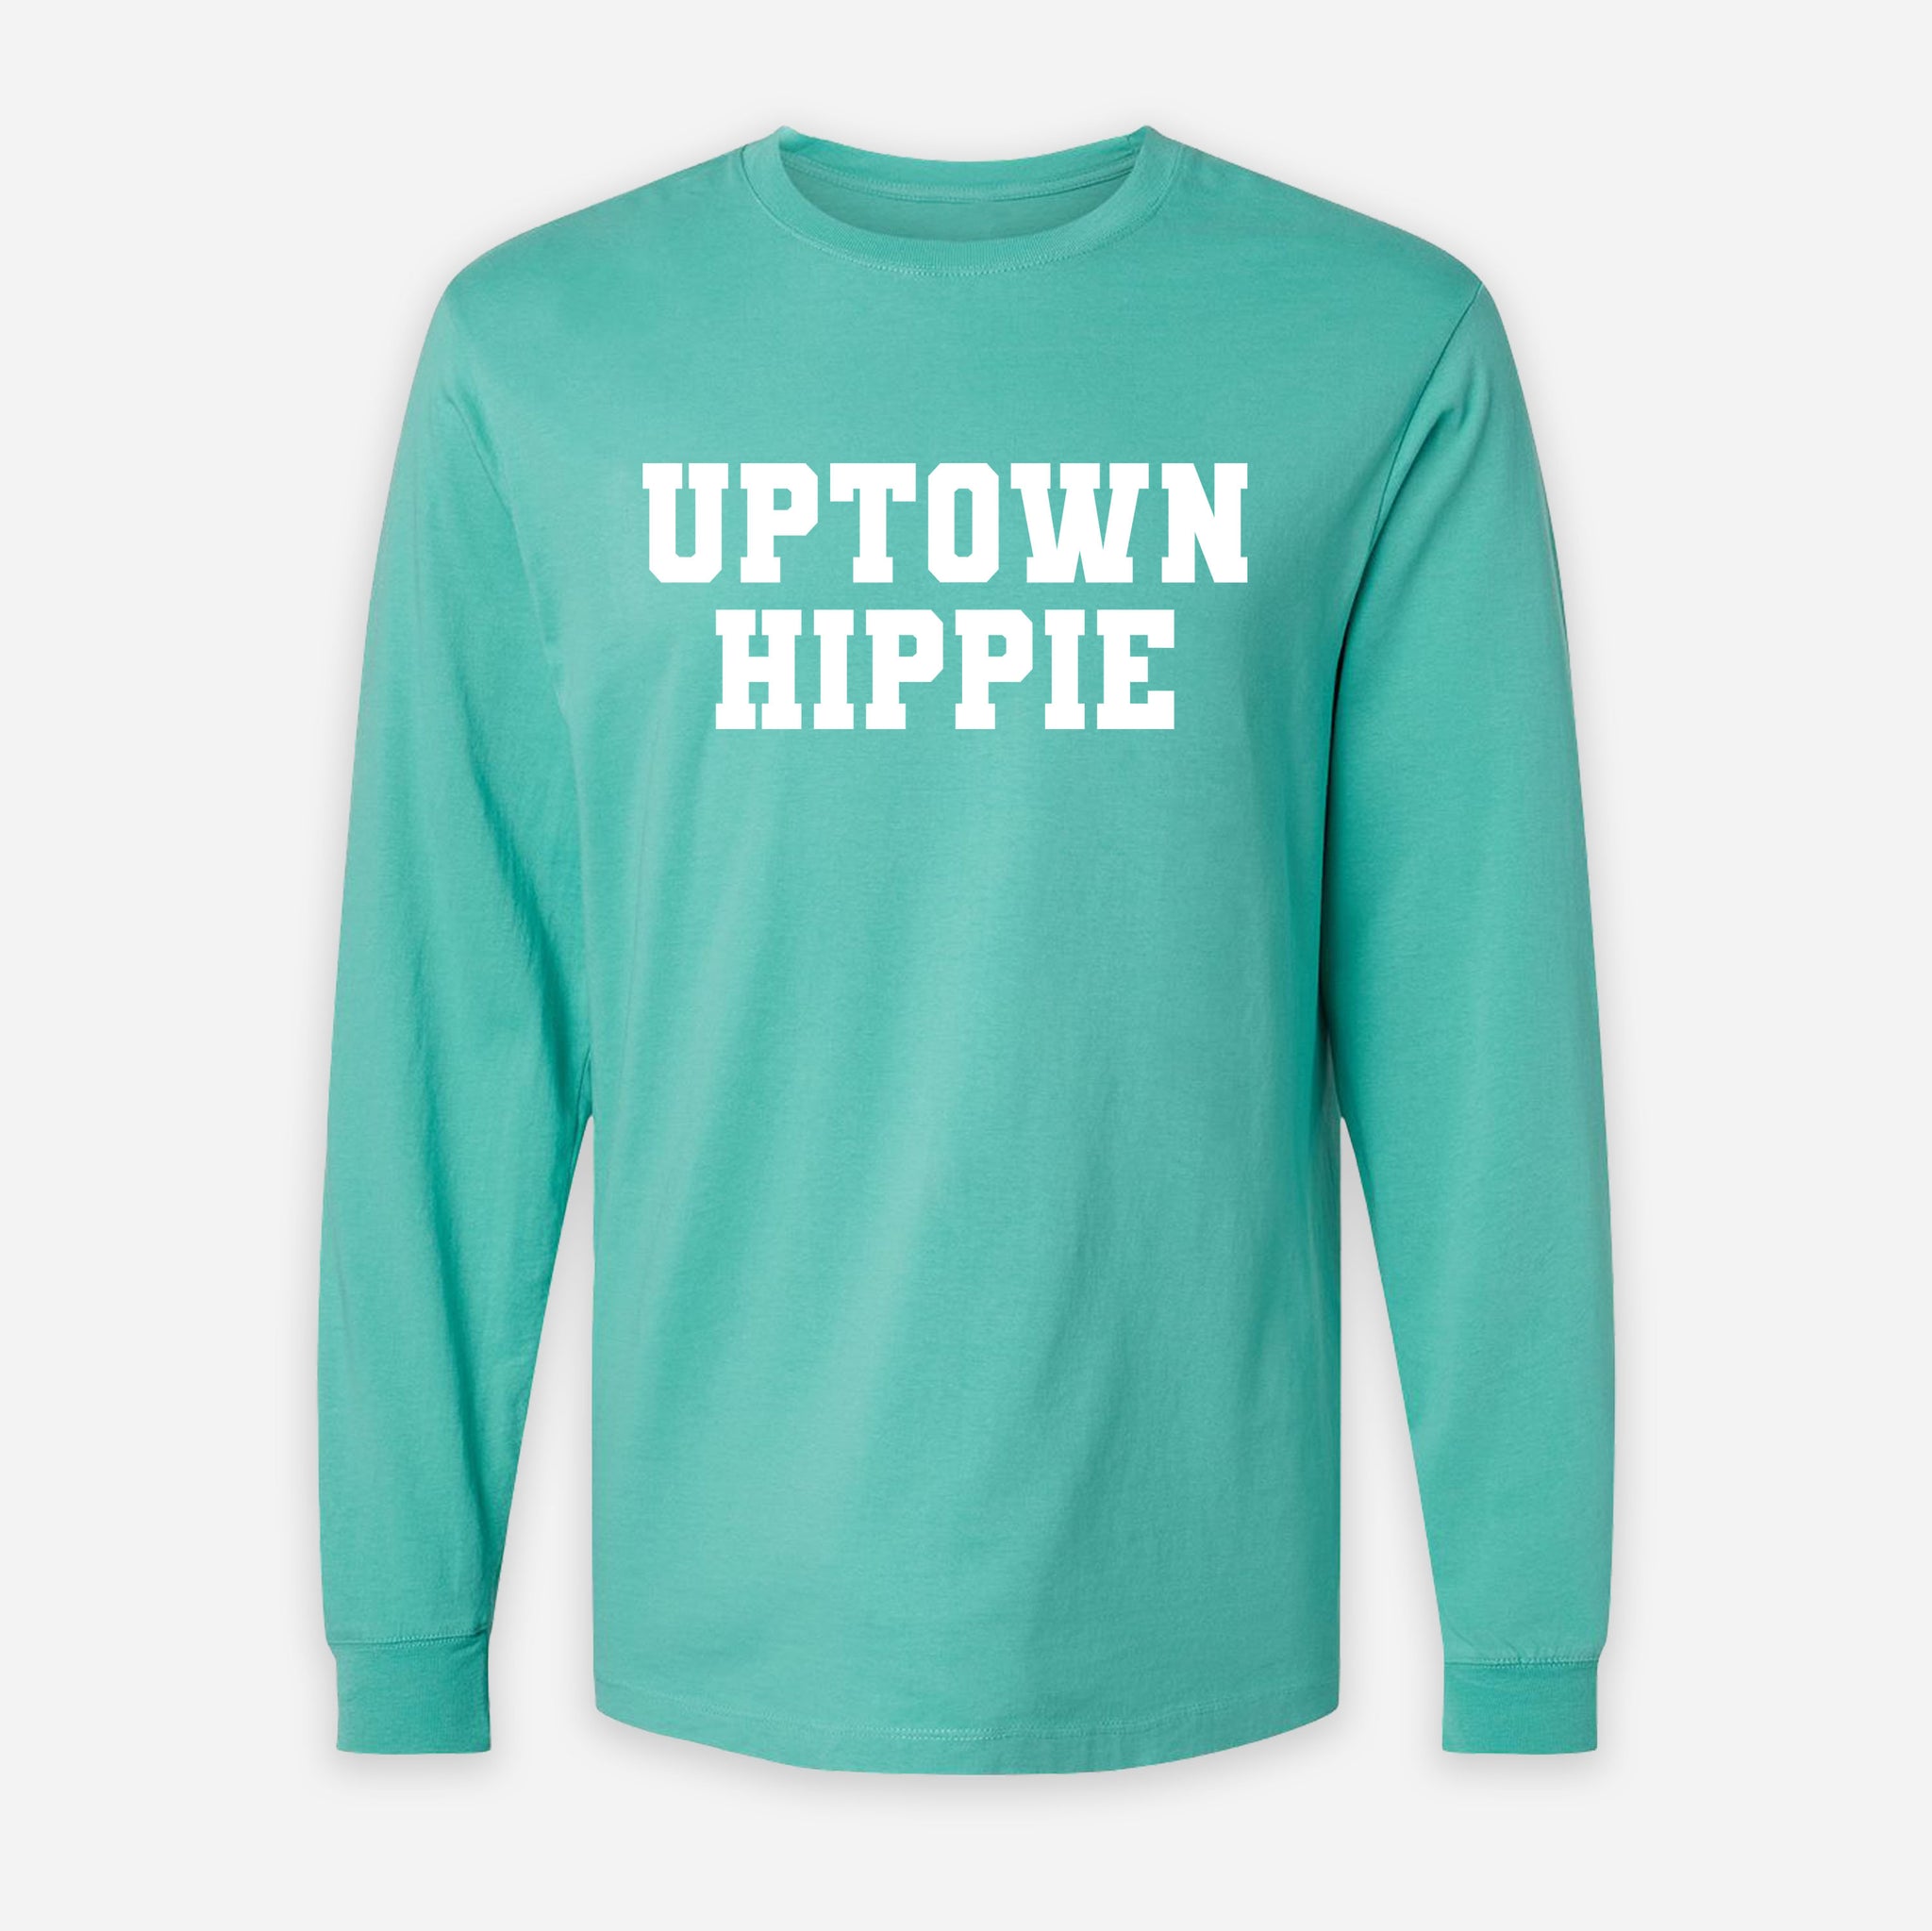 Uptown Hippie Long Sleeve Shirt